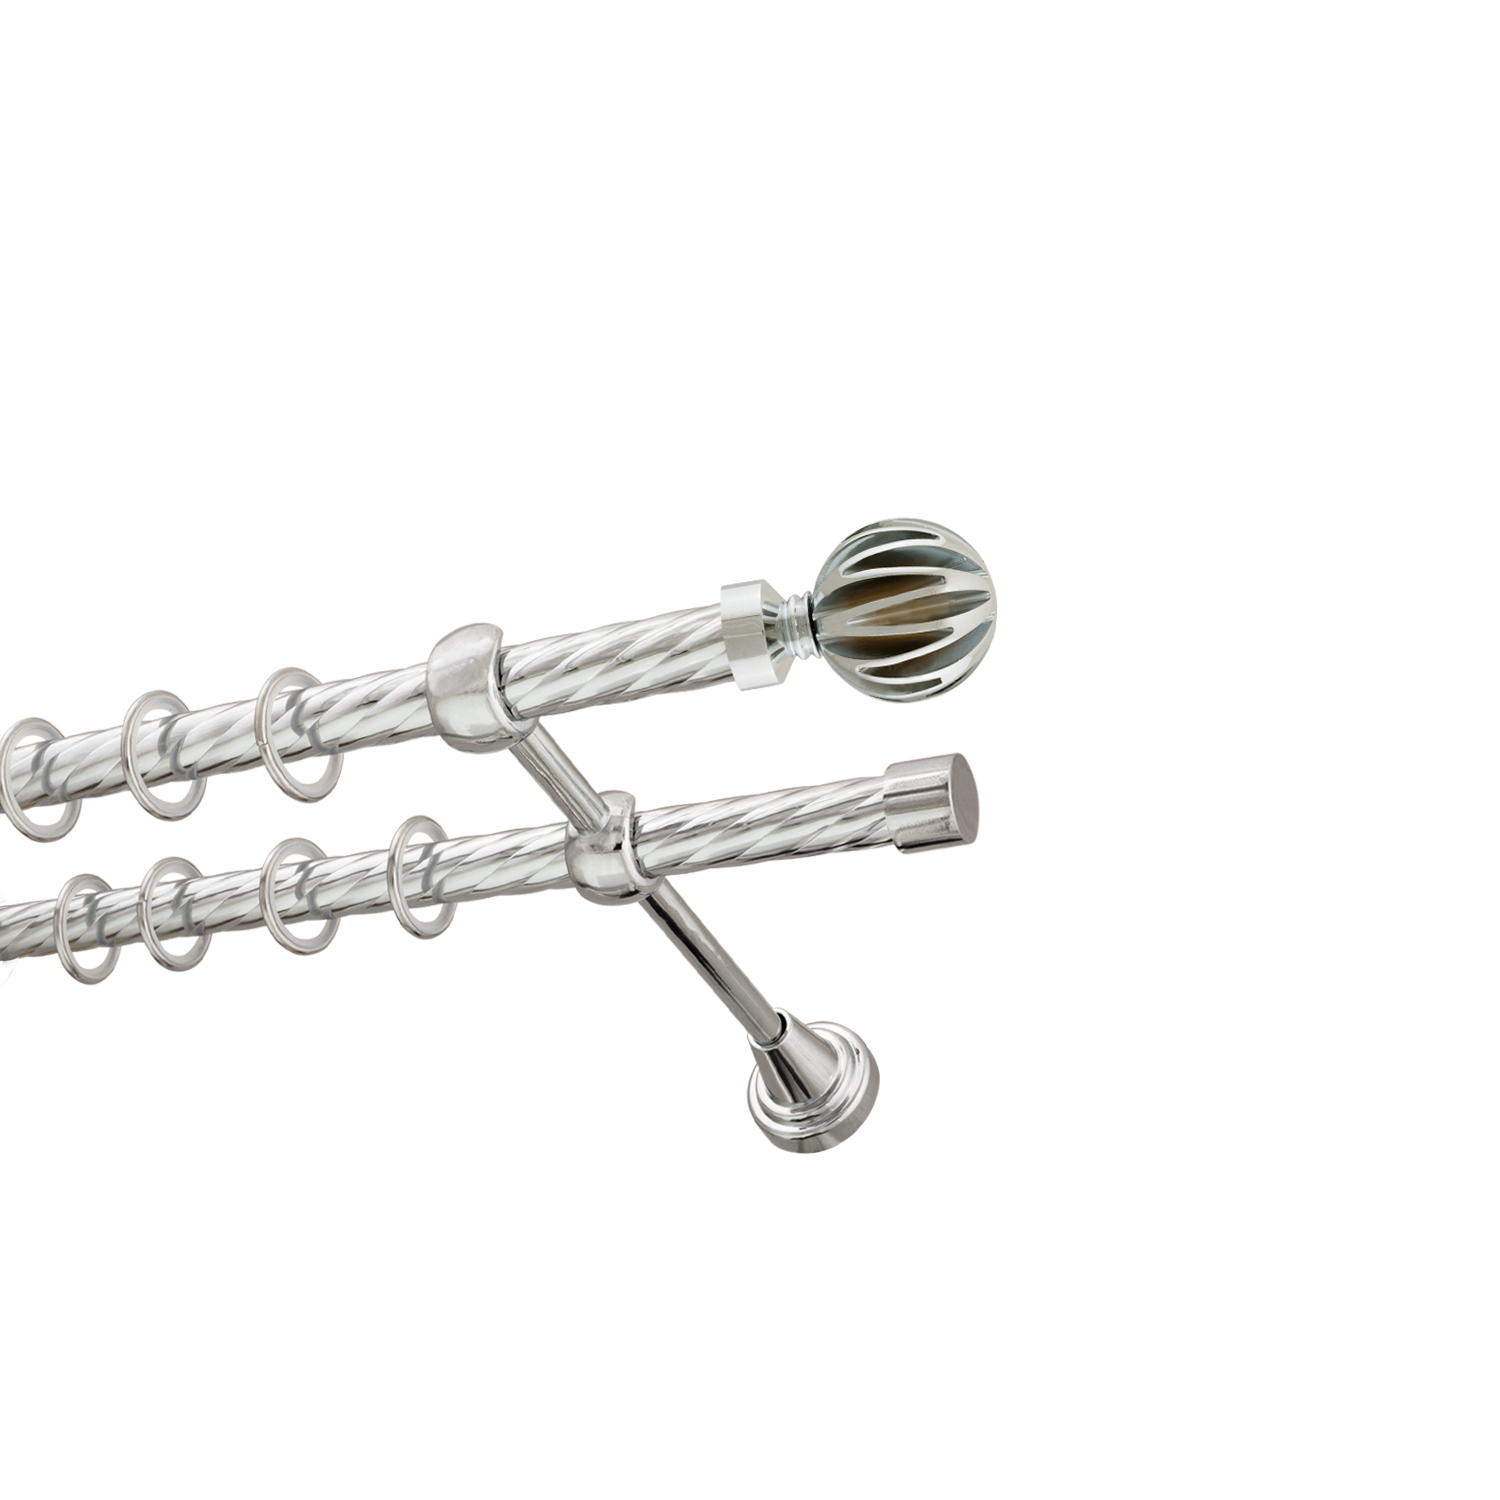 Металлический карниз для штор Шафран, двухрядный 16/16 мм, серебро, витая штанга, длина 200 см